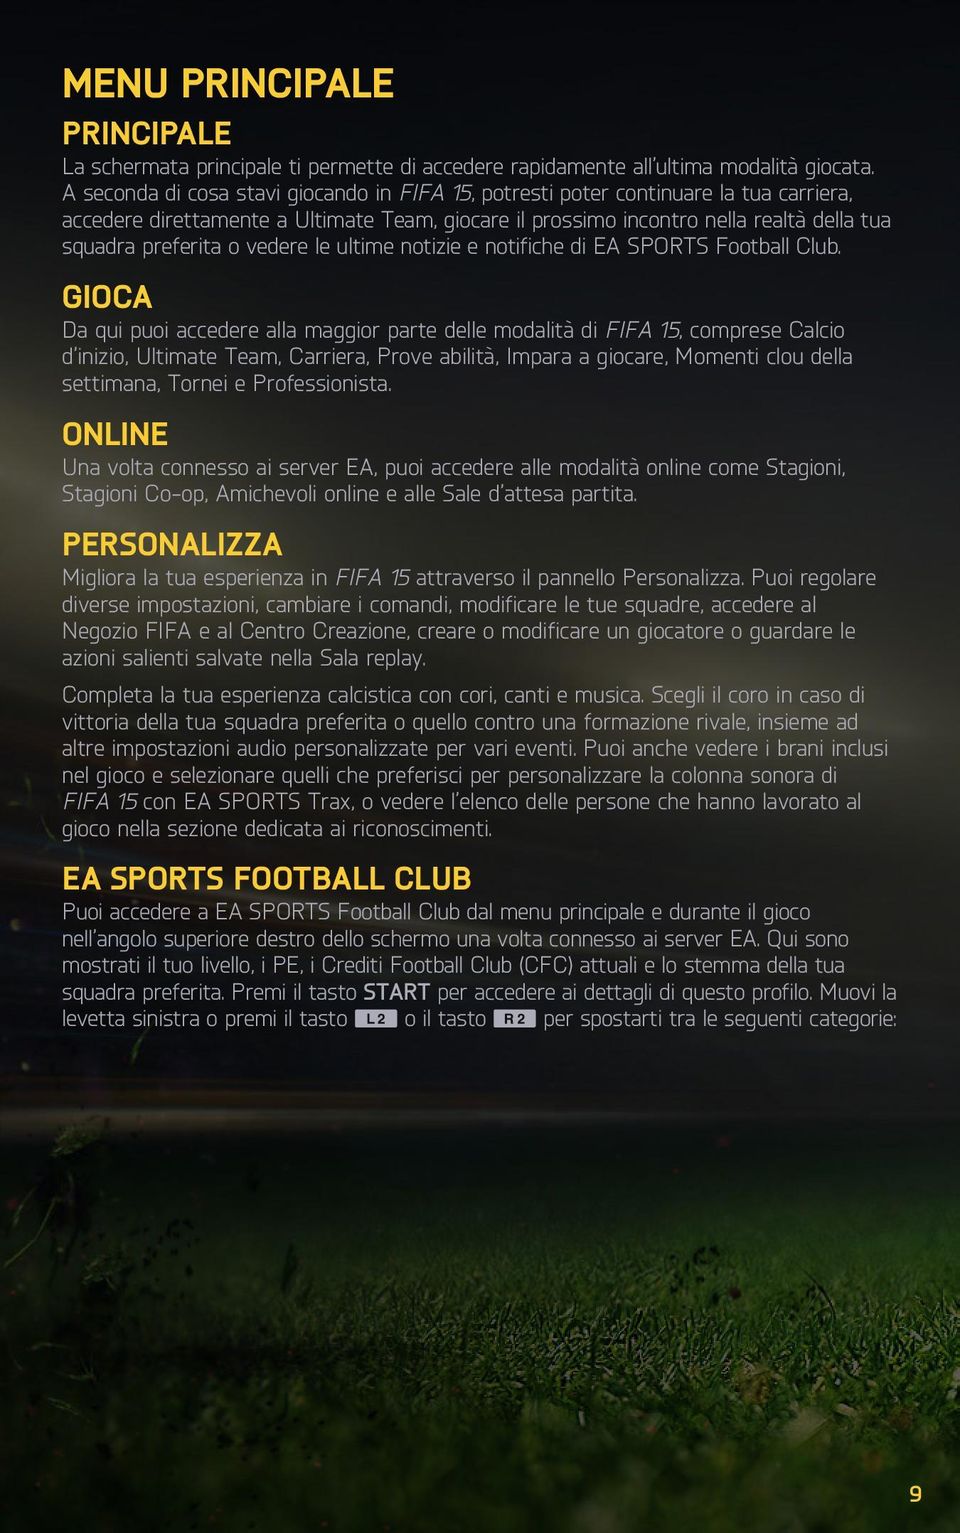 vedere le ultime notizie e notifiche di EA SPORTS Football Club.